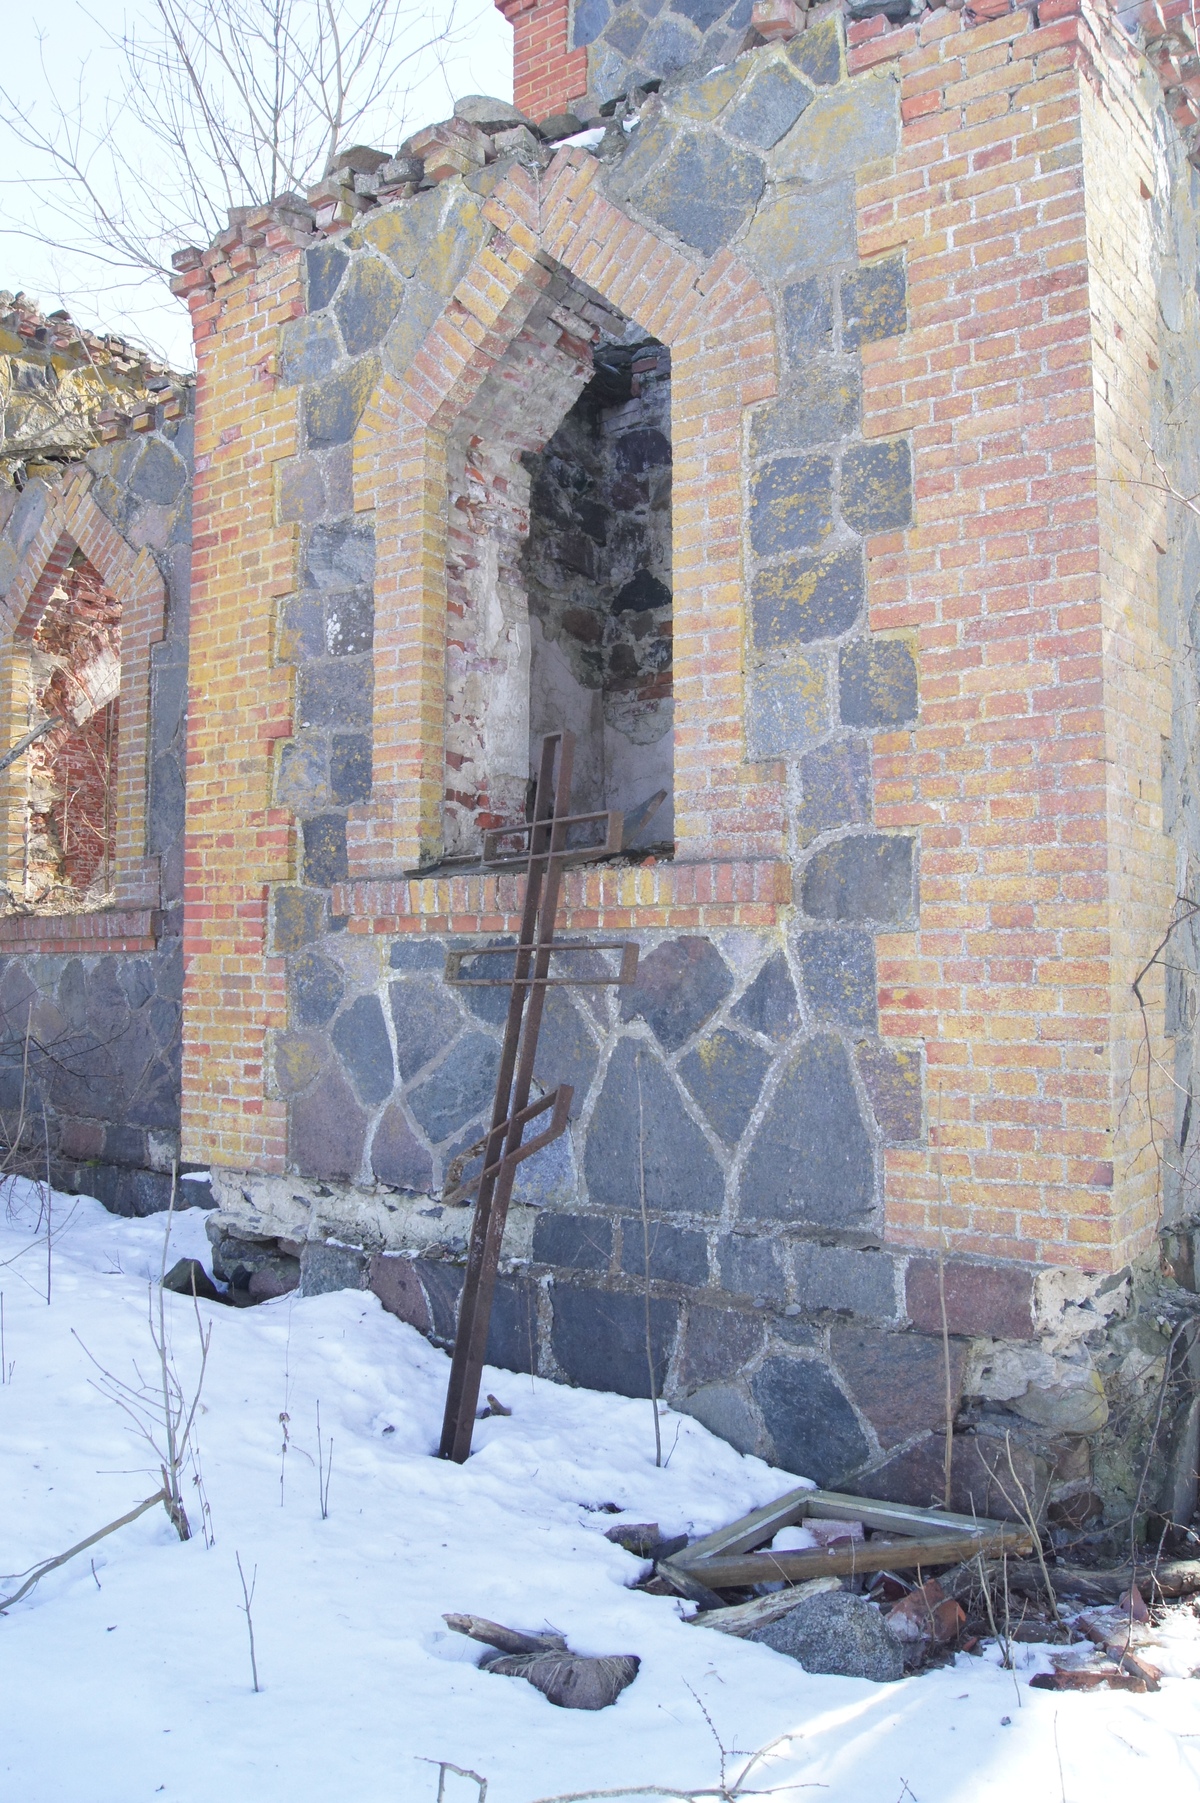  Kullamaa õigeusu Nikolai kirik.